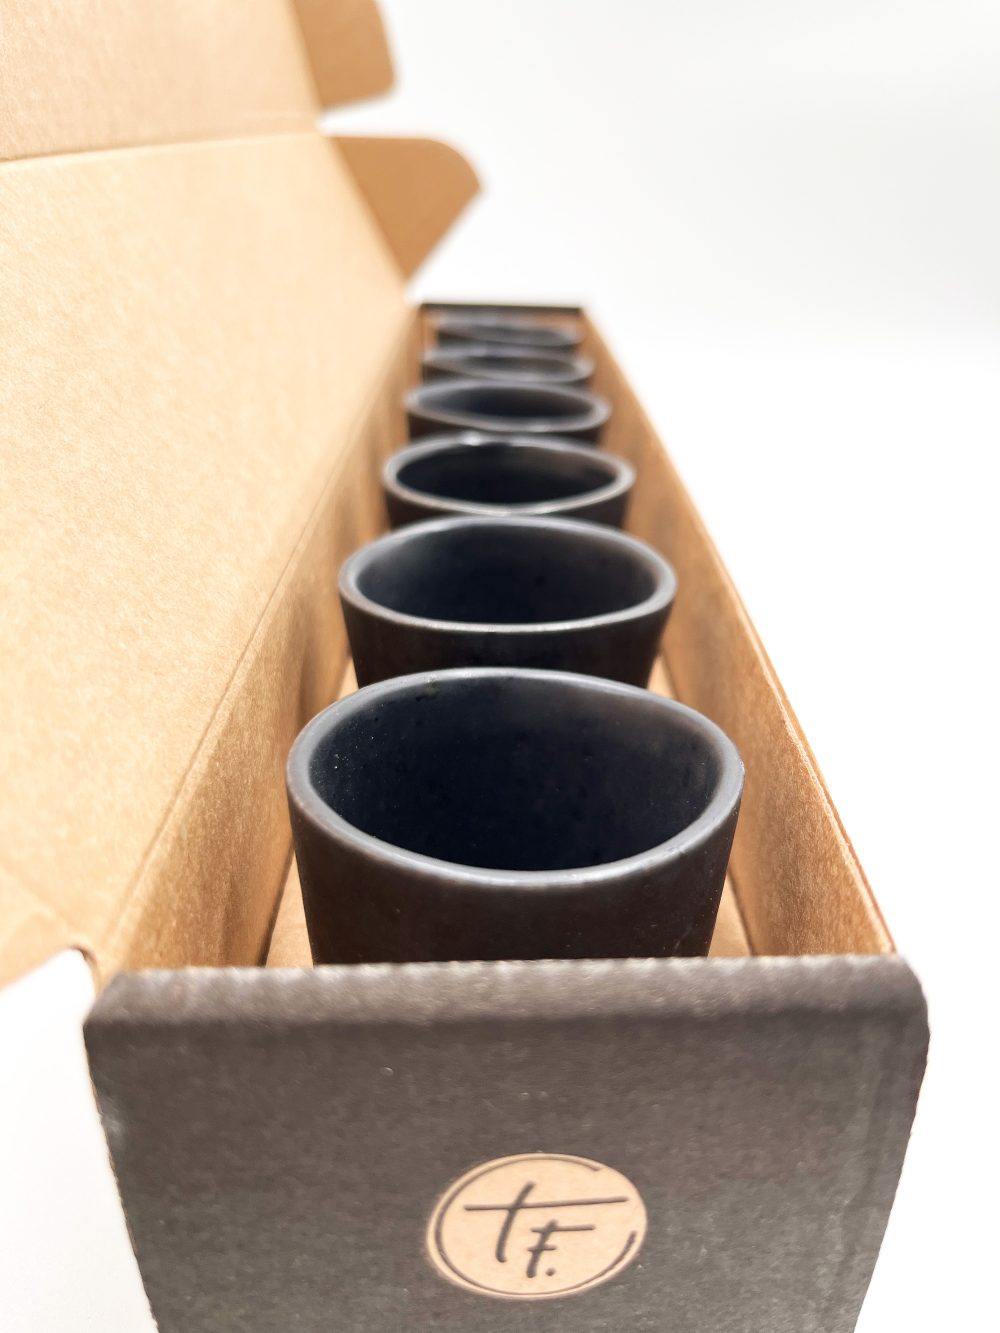 zwarte espresso kopjes - exclusief handgemaakt keramiek - modern portugees servies bij UNRO